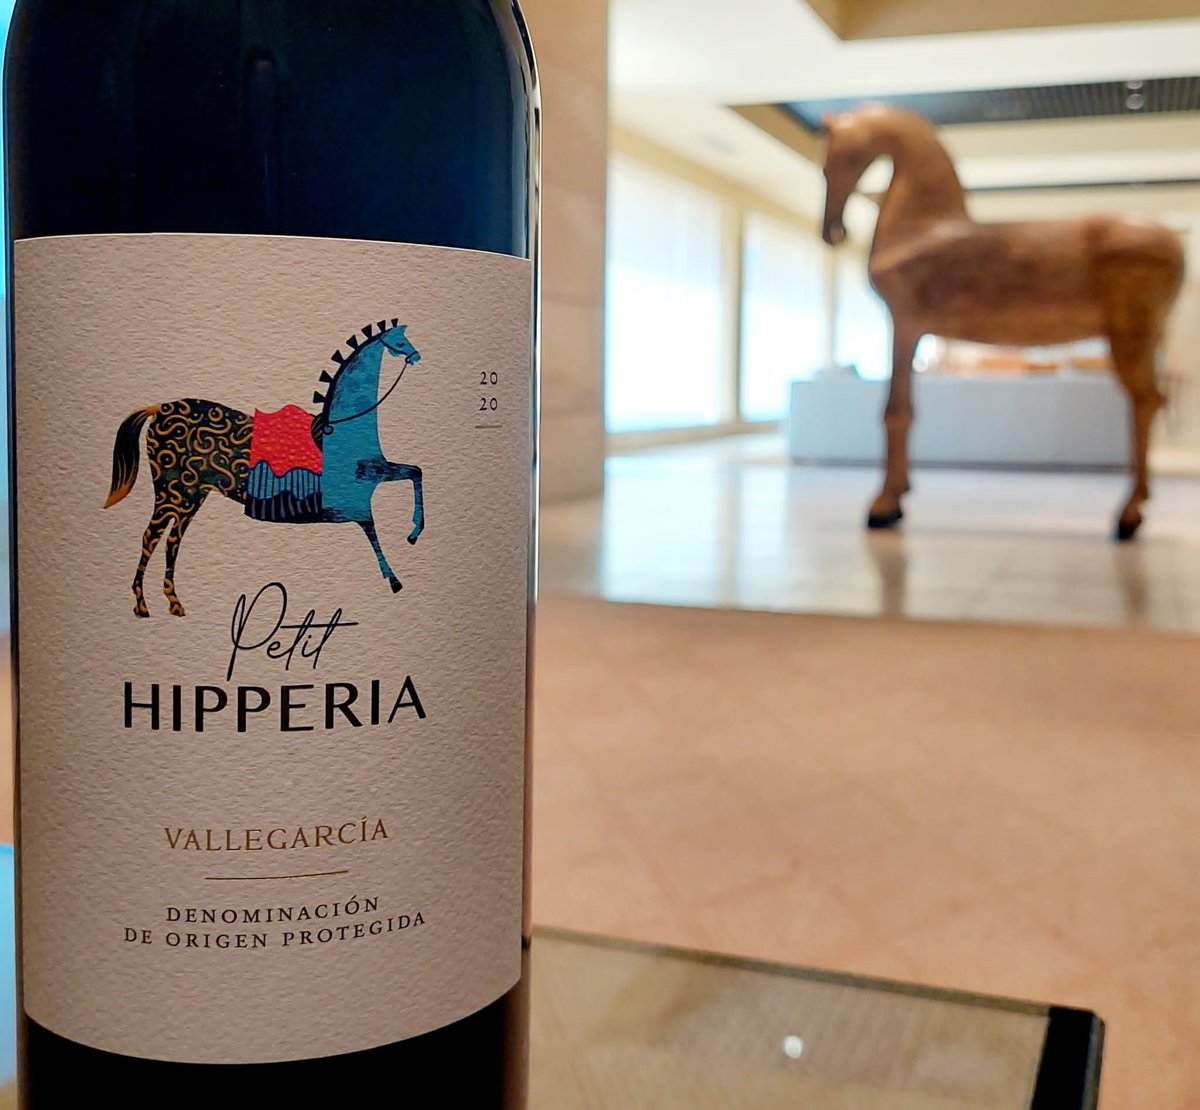 PETIT HIPPERIA es el toque de elegancia para cada día, donde podemos apreciar el estilo de la bodega y la verdadera expresión del terroir. #PagoVallegarcía #Pago #winemaking #vino #Spain